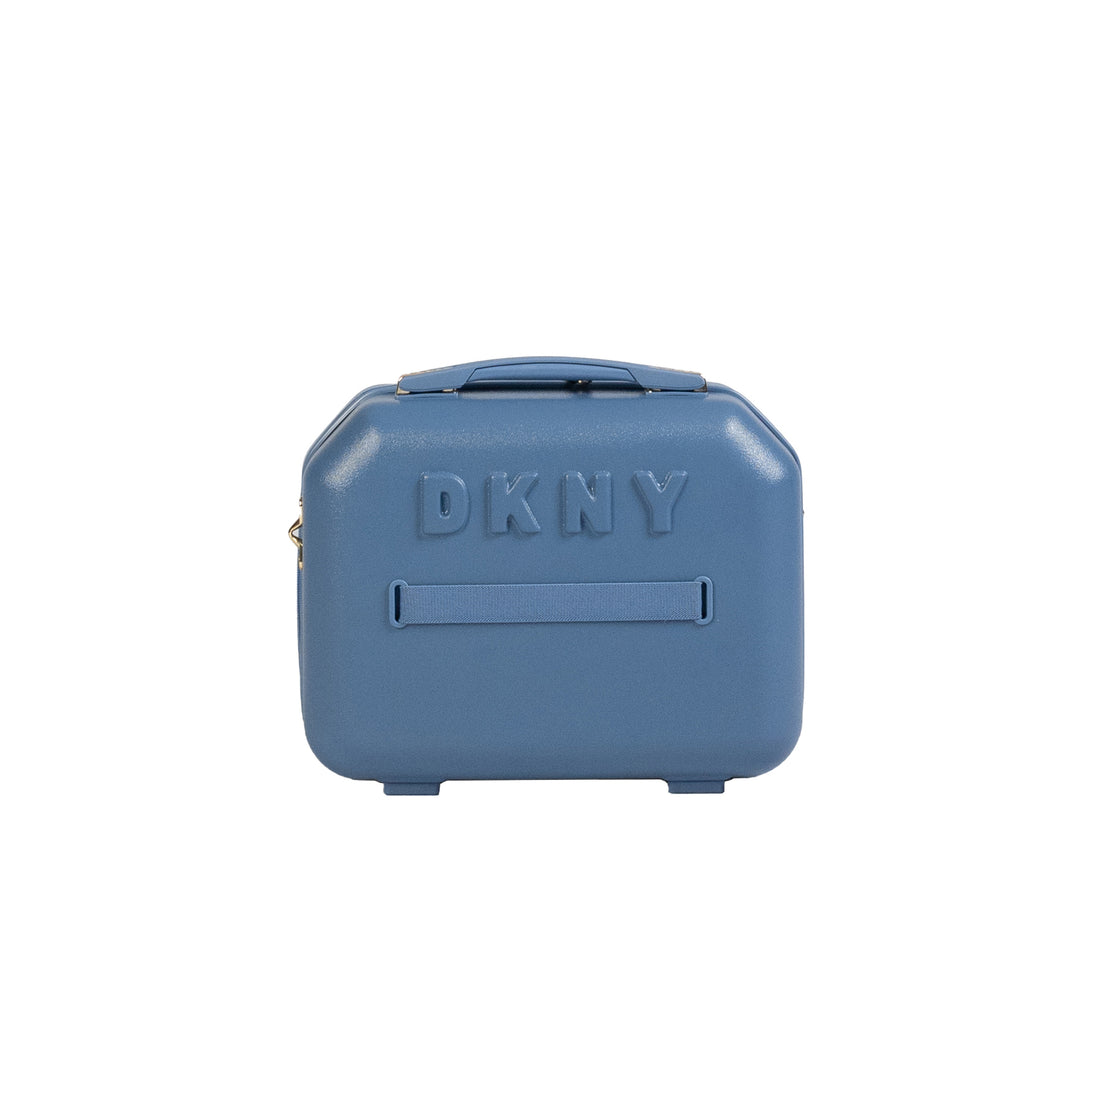 DKNY Blue Beauty Case